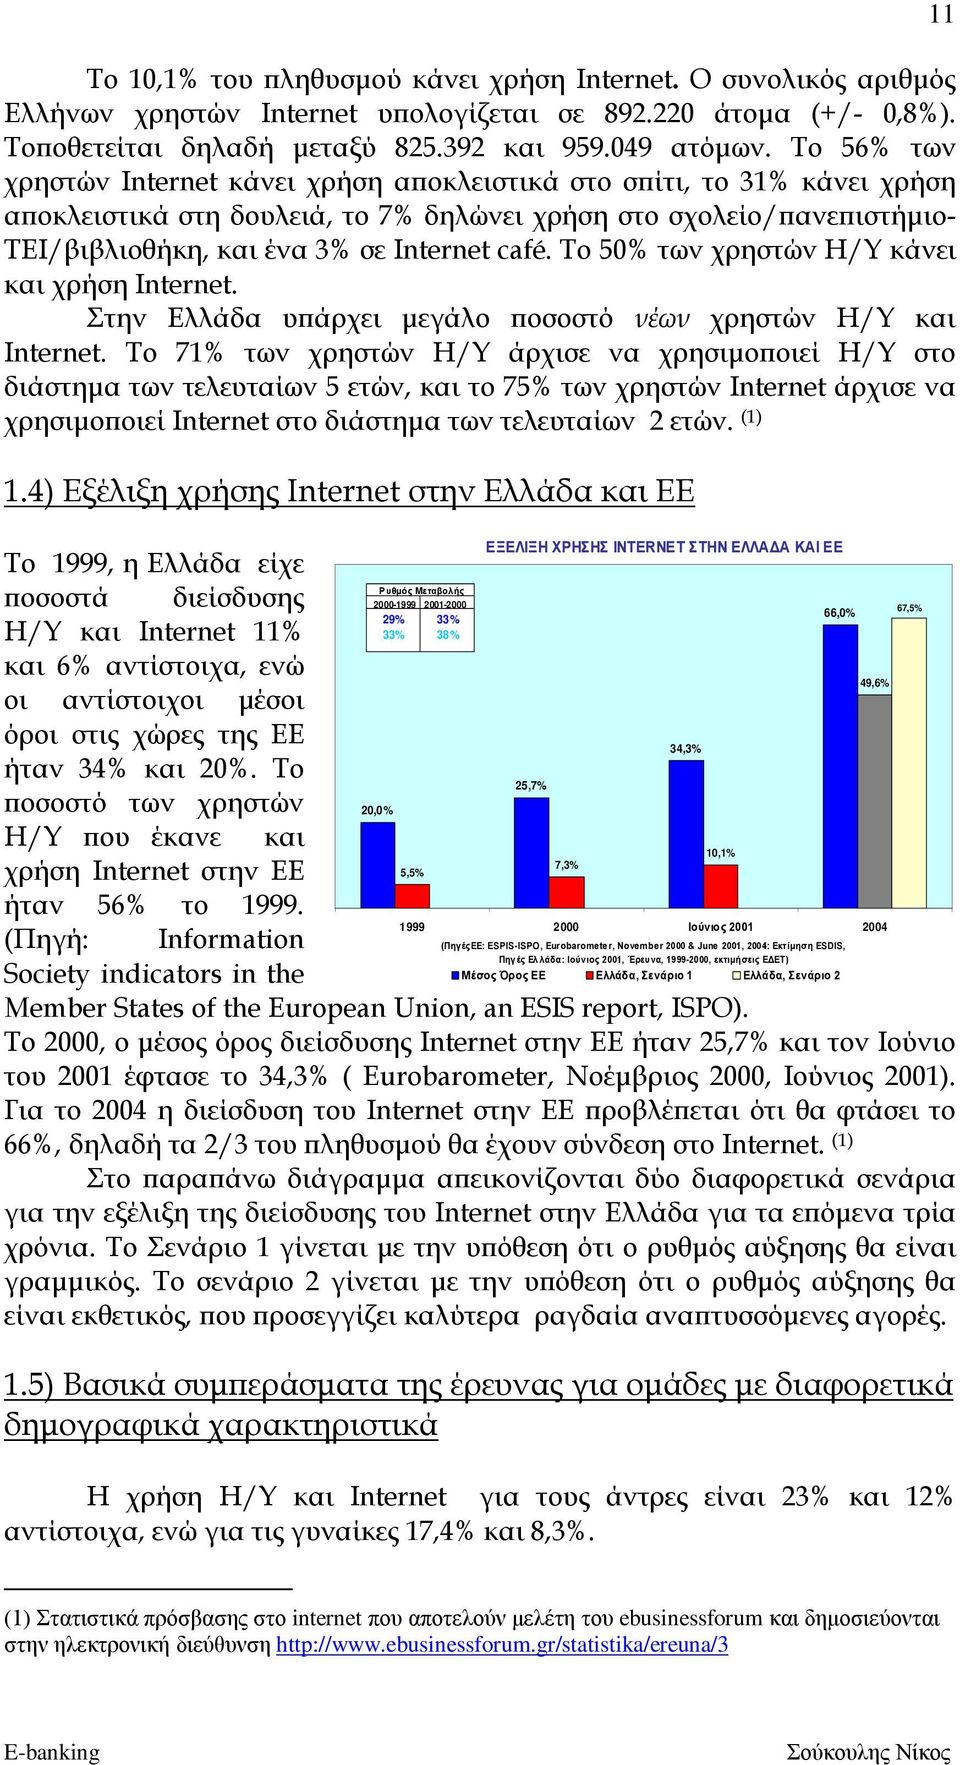 Το 50% των χρηστών Η/Υ κάνει και χρήση Internet. Στην Ελλάδα υπάρχει μεγάλο ποσοστό νέων χρηστών Η/Υ και Internet.